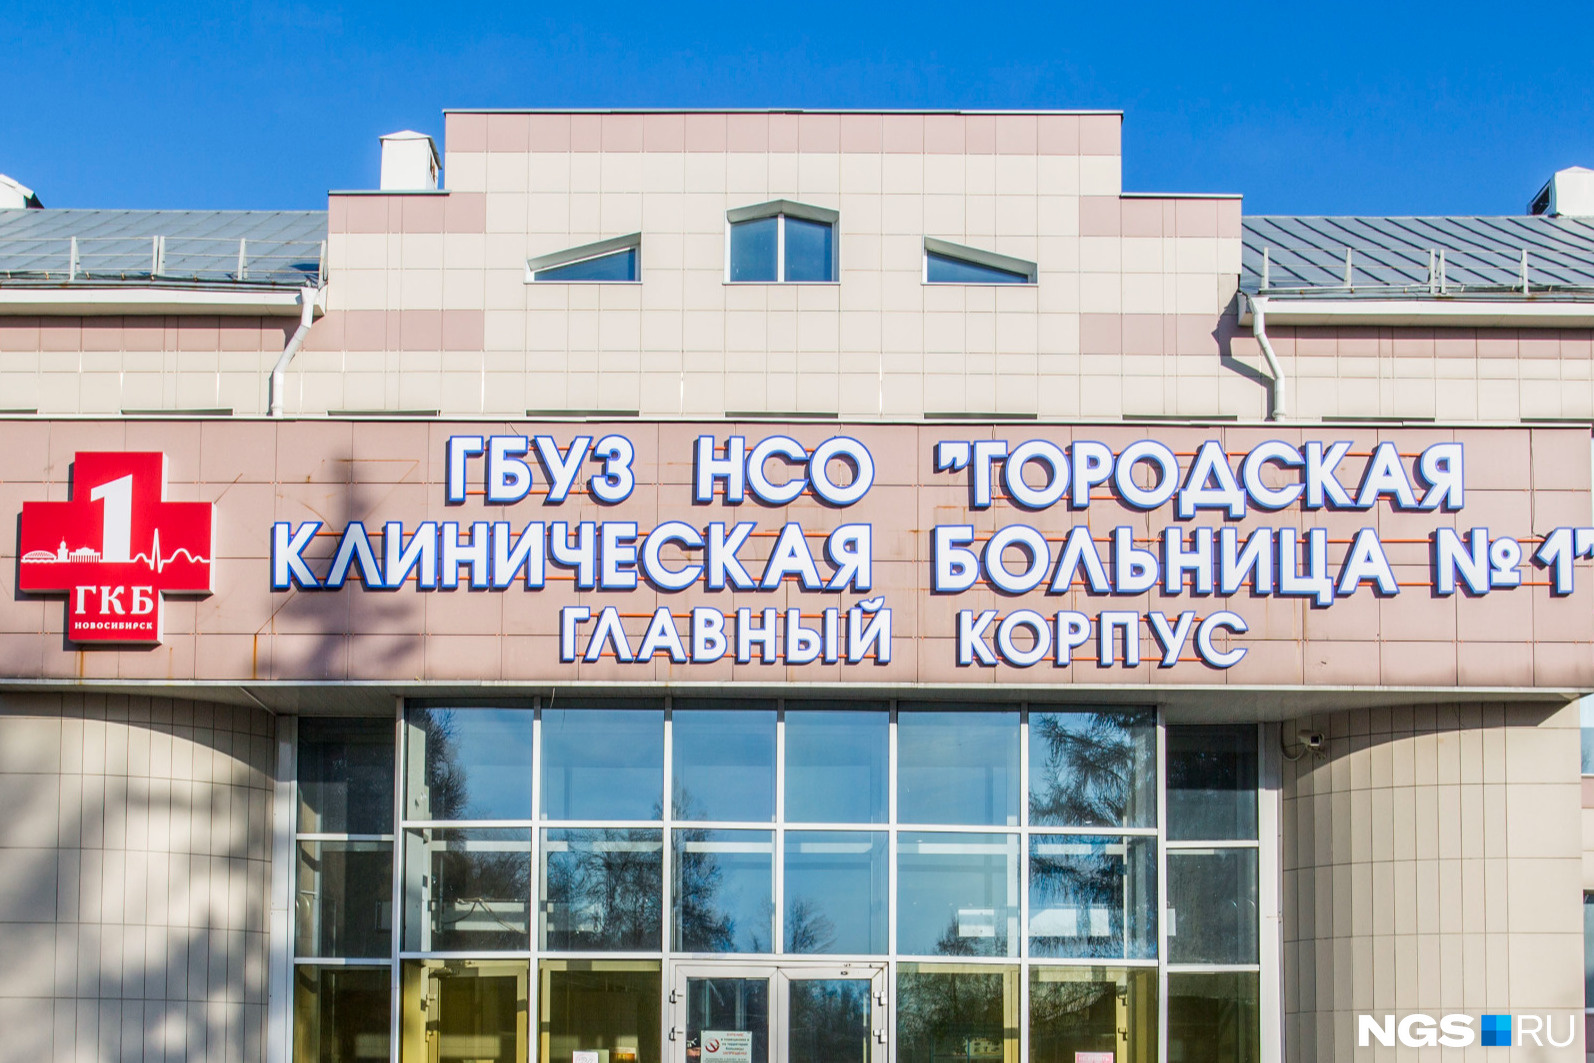 По информации, внесенной в медицинскую электронную базу, Санникова пробыла в больнице 4 дня, хотя на самом деле ее обследование длилось не более 4 часов